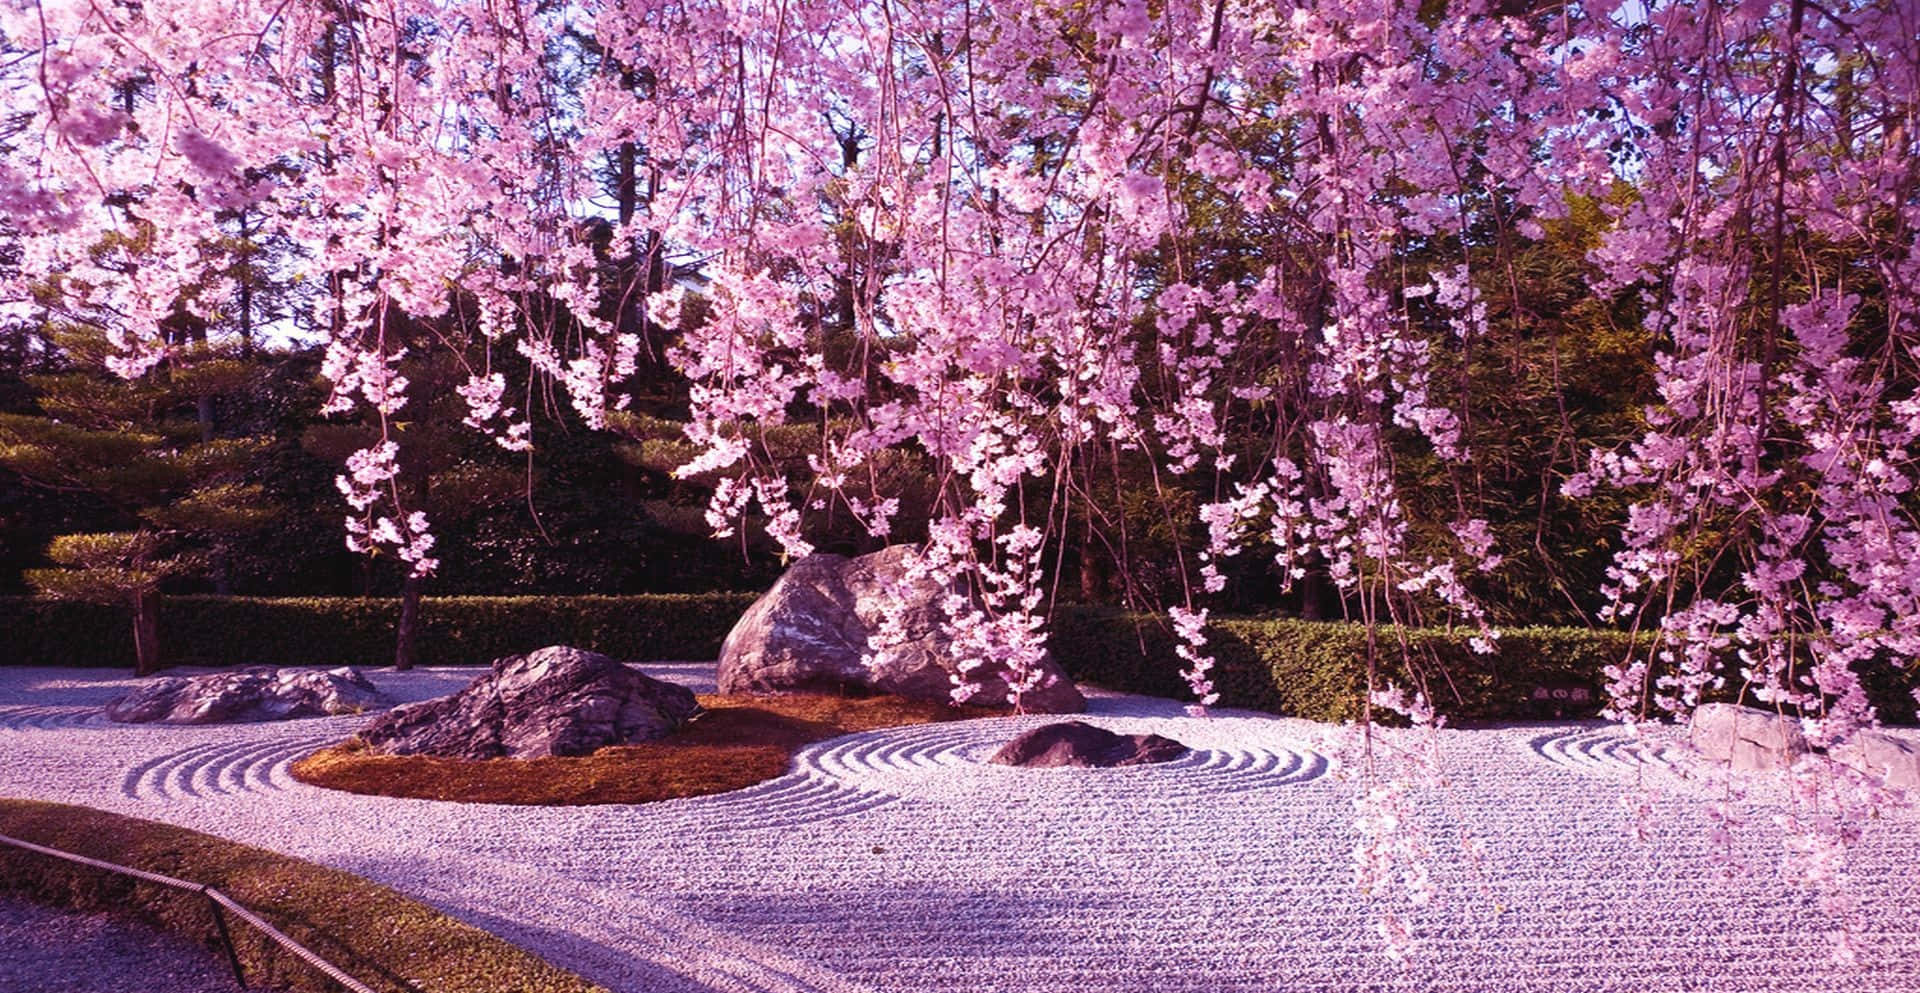 Unavista Impresionante De Un Árbol De Sakura En Plena Floración. Fondo de pantalla